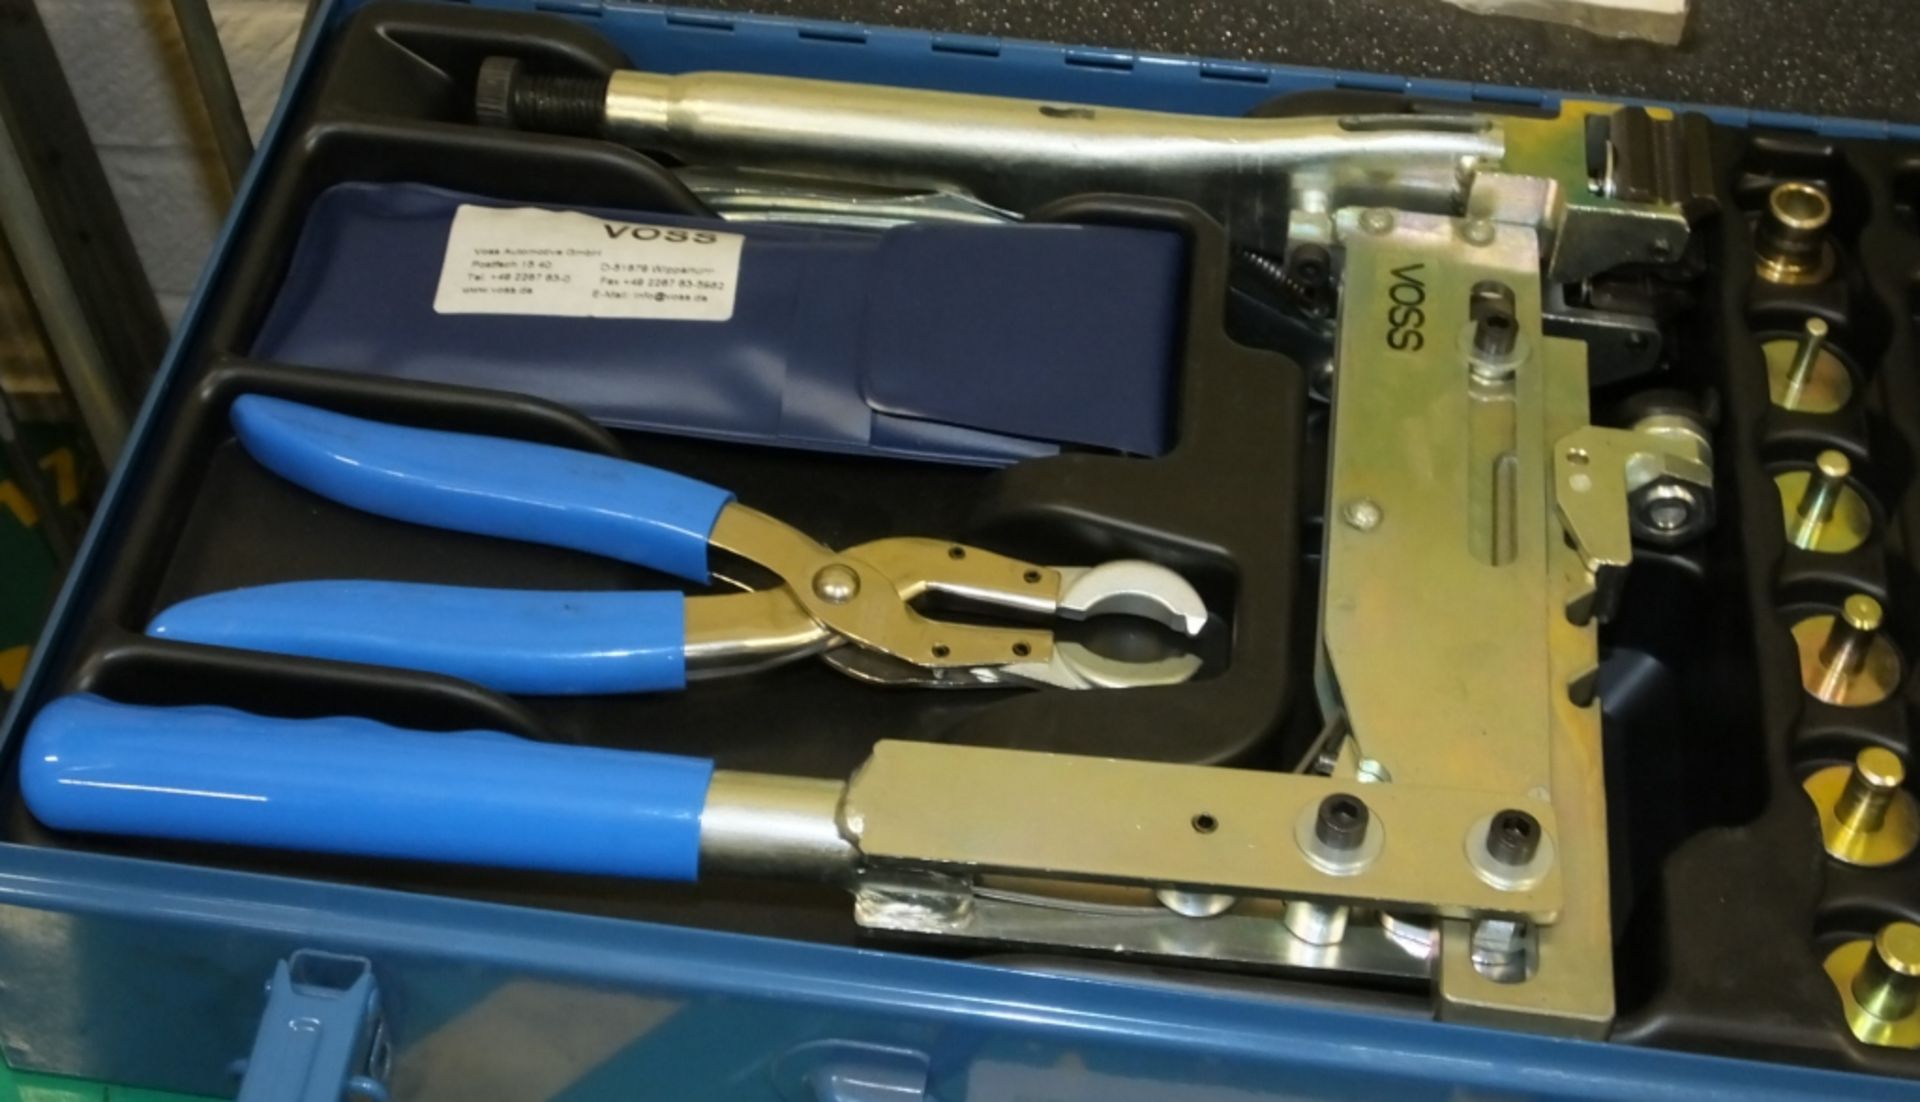 Man Sachnummer Tool Kit Brake in carry case - Image 2 of 3